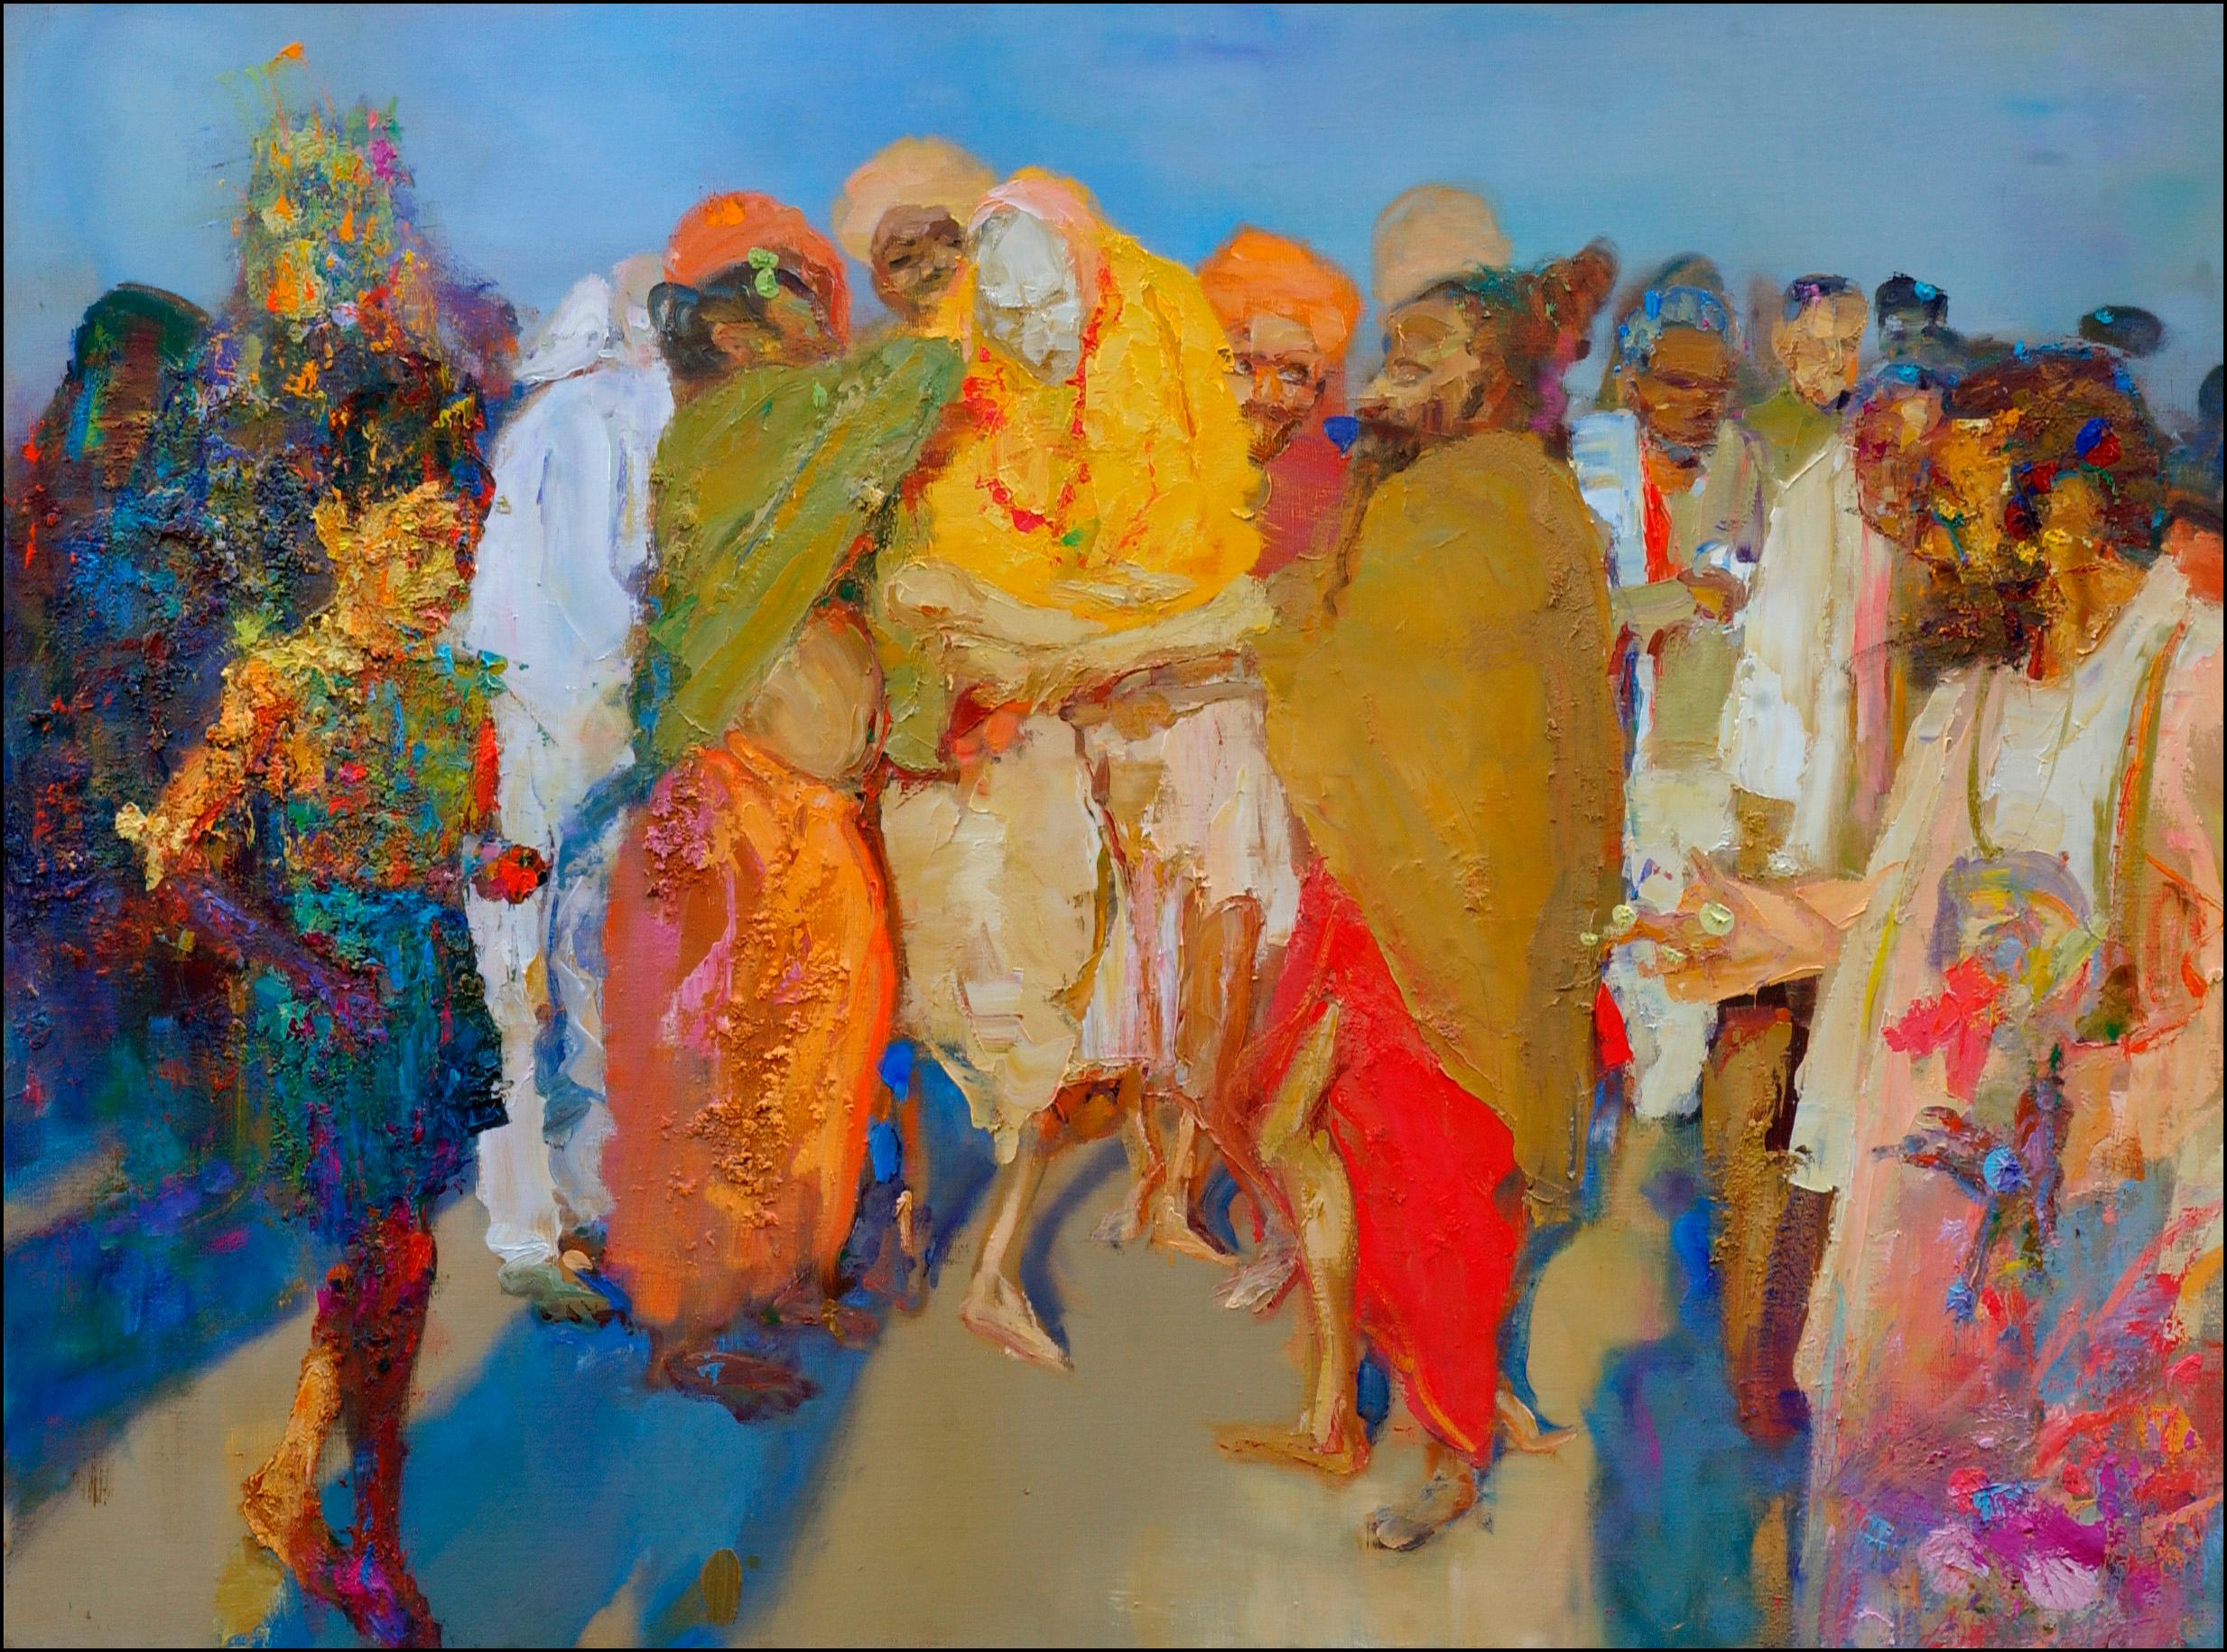 Aïeul d'Inde (2000) de l'artiste contemporain français Christophe Dupety. Huile sur toile, H 38.2 x L 51.2 in (97 x 130 cm). Œuvre unique vendue non encadrée avec un certificat d'authenticité.
L'artiste s'attache à " faire ressortir dans ses œuvres